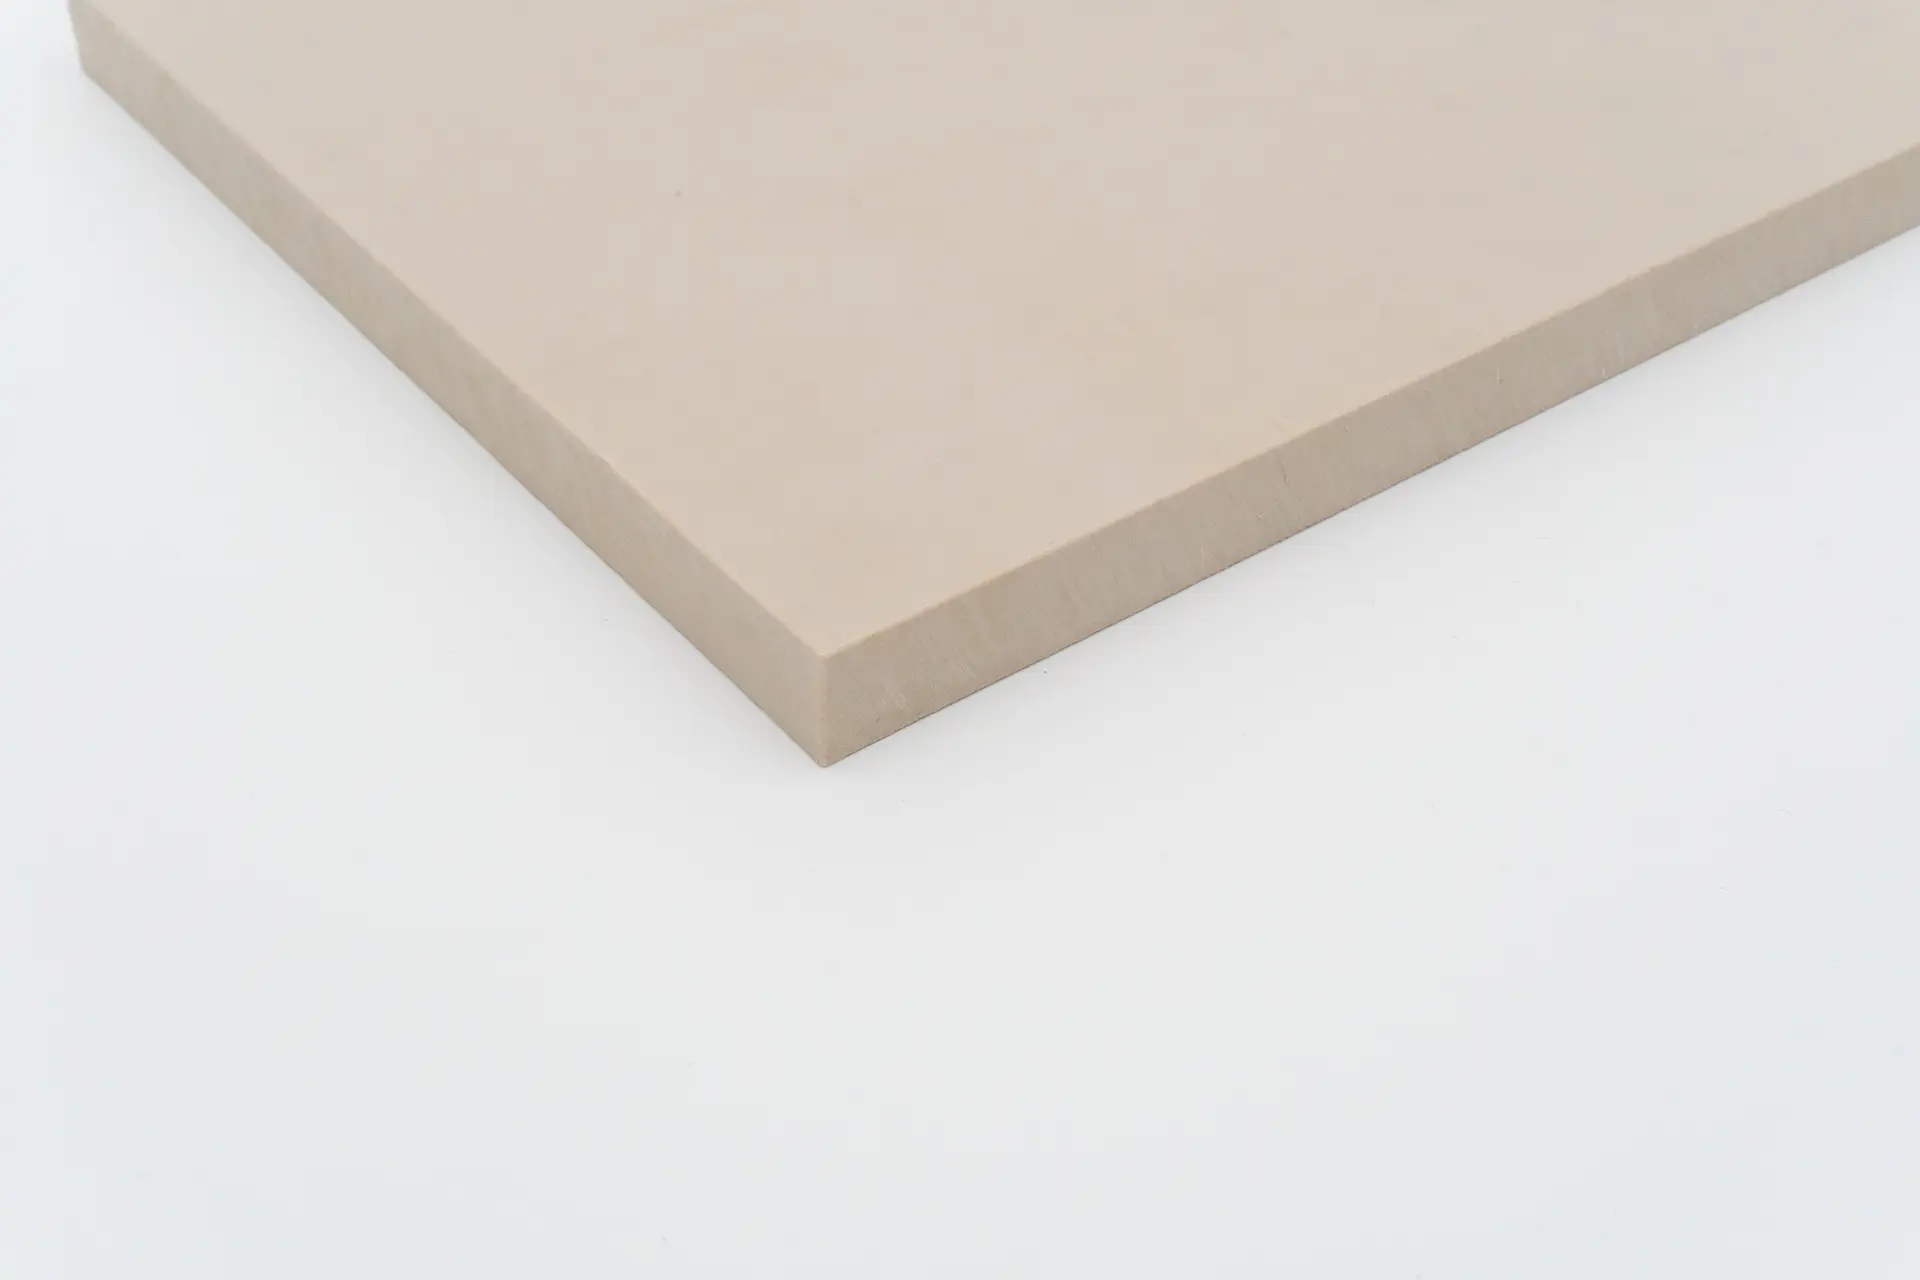 PEEK Sheet on a white background | BIEGLO GmbH